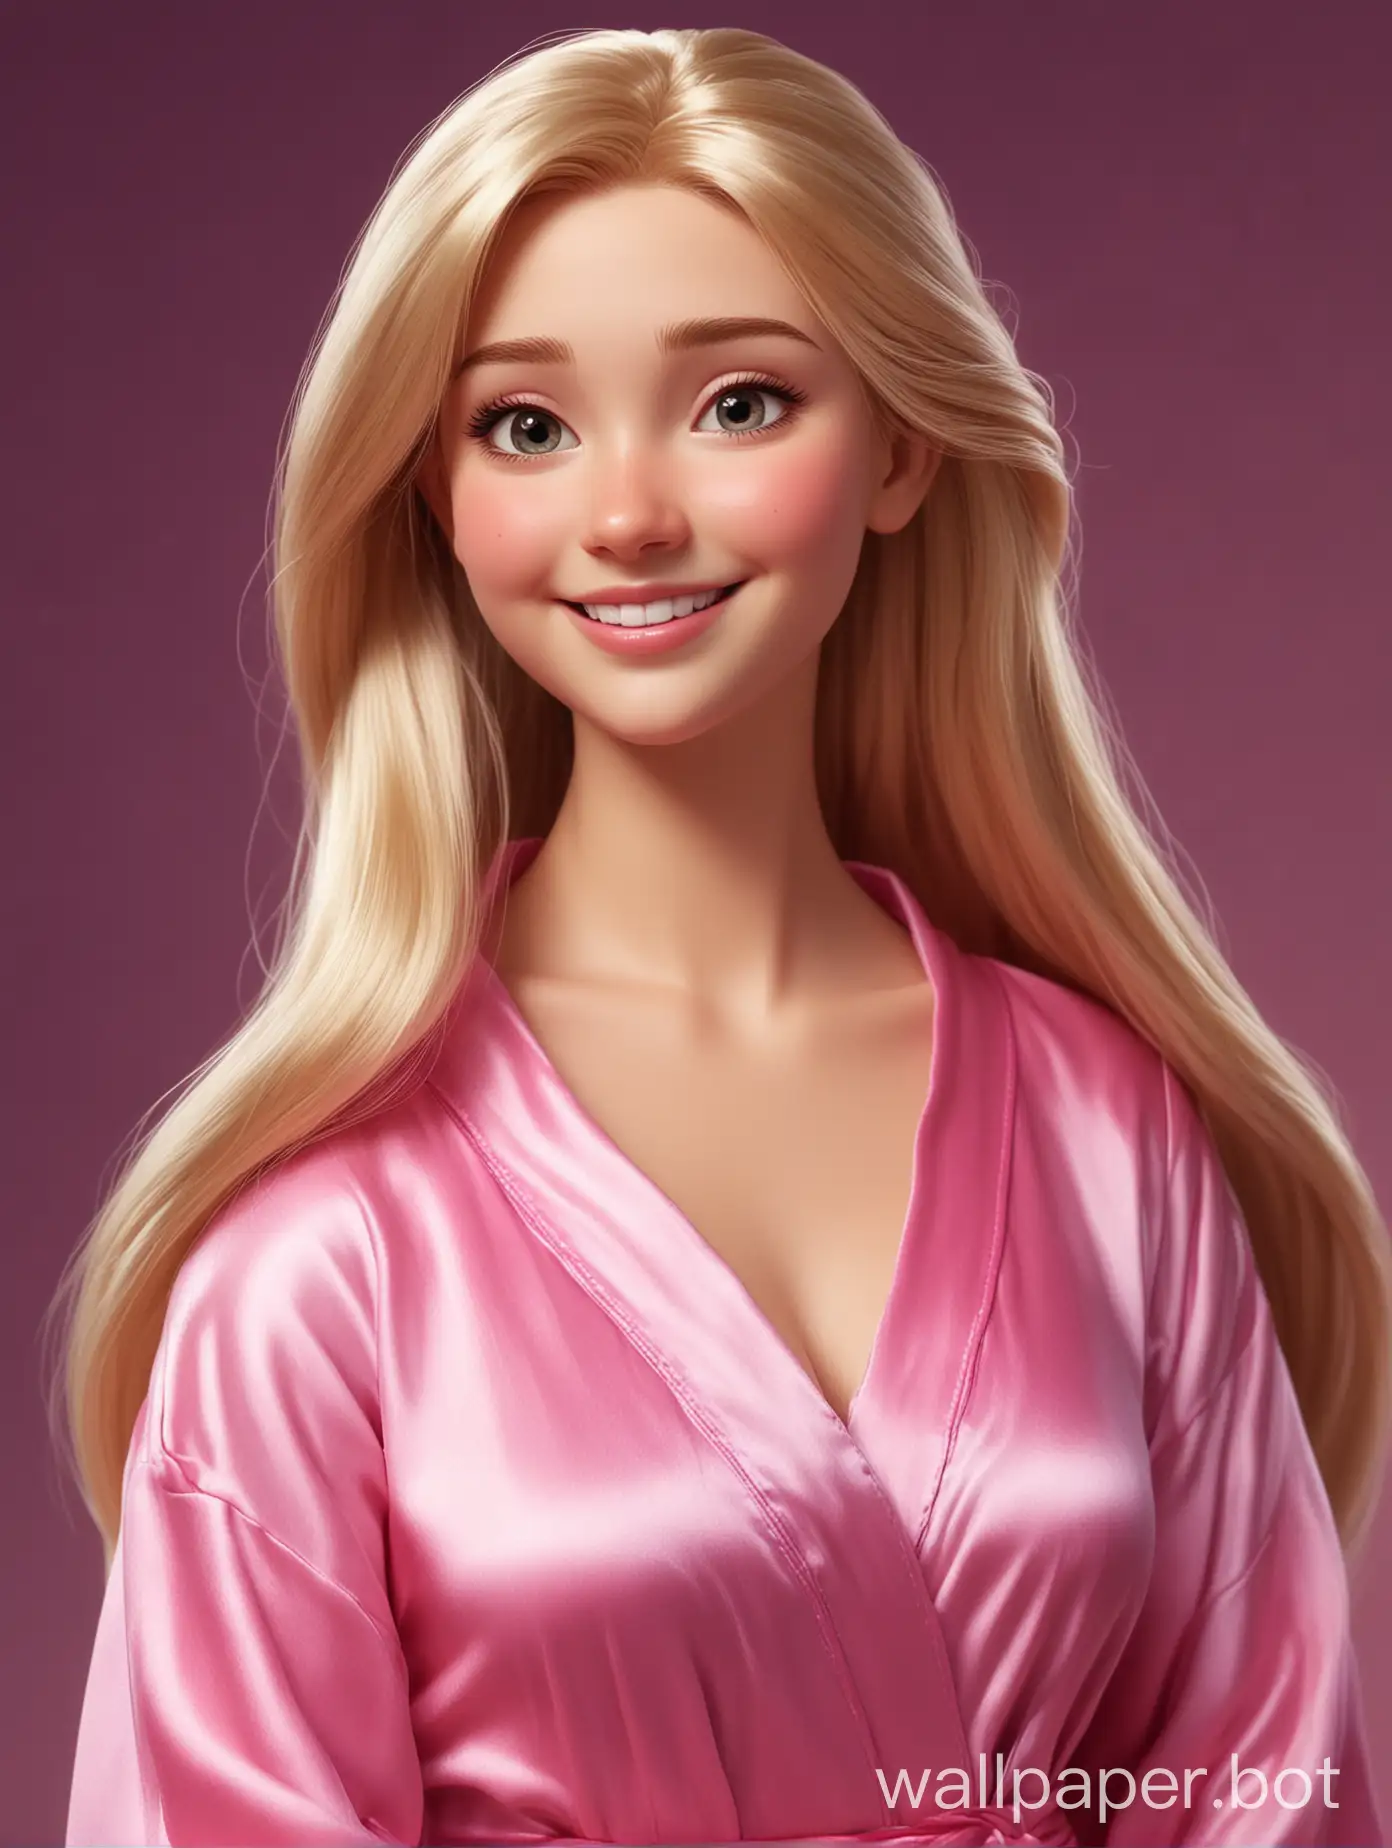 Реалистичная, диснеевская милашка Рапунцель улыбается с длинными прямыми шелковистыми волосами в шелковом халате цвета розовая фуксия